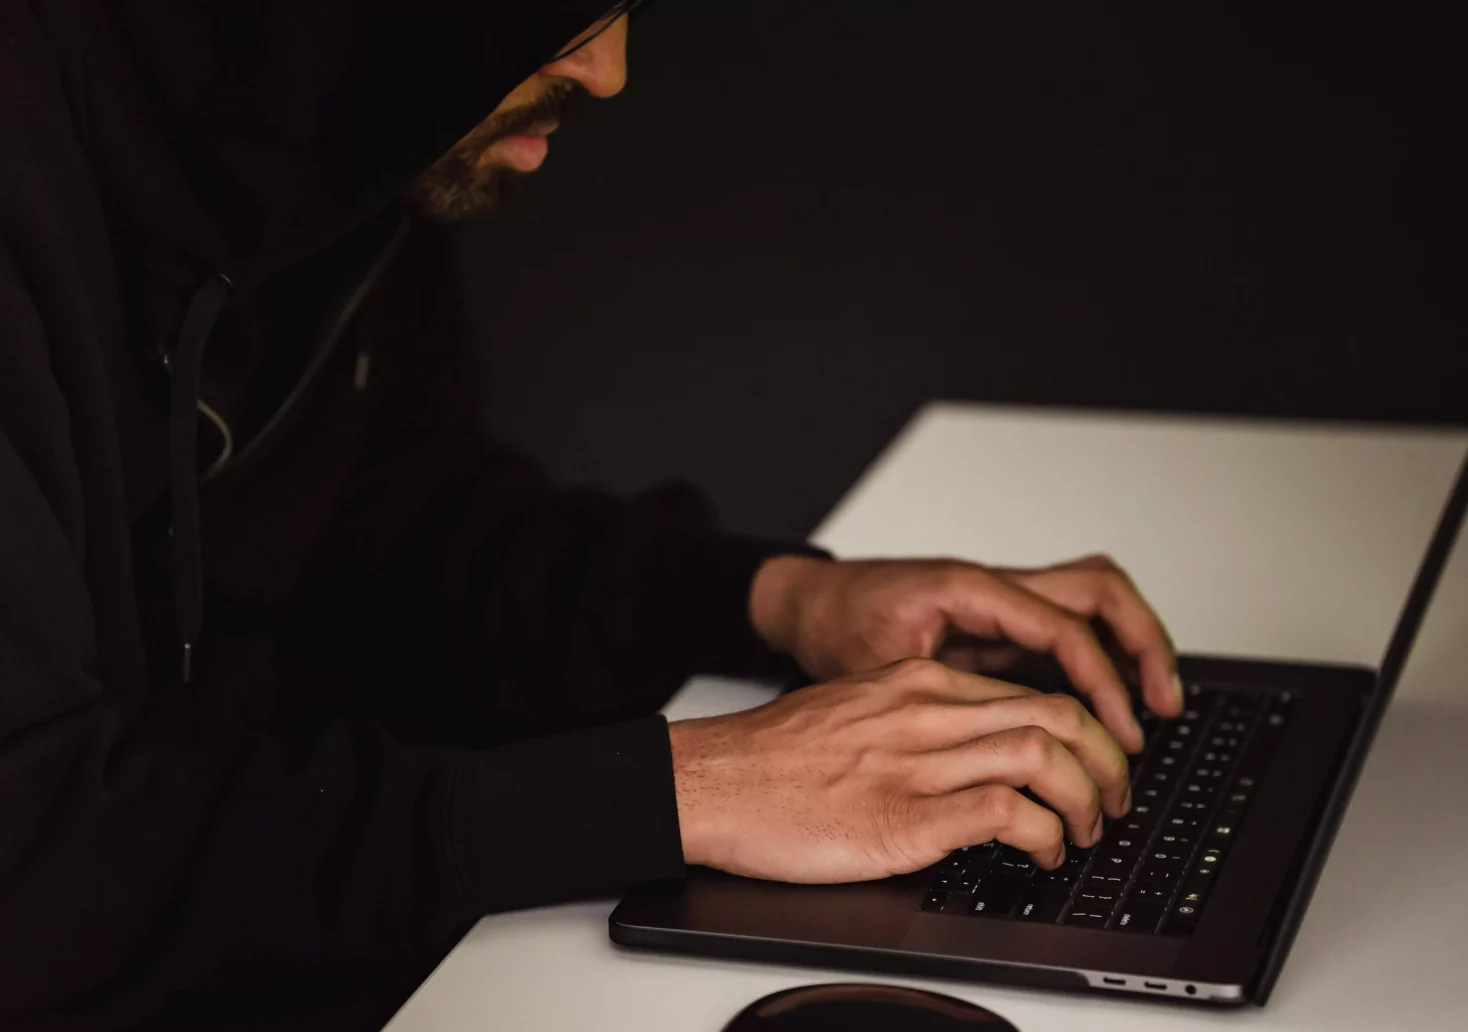 Ein Bild auf 5min.at zeigt einen Mann im dunklen Kapuzenpulli, der vor einem Laptop sitzt und auf der Tastatur tippt.